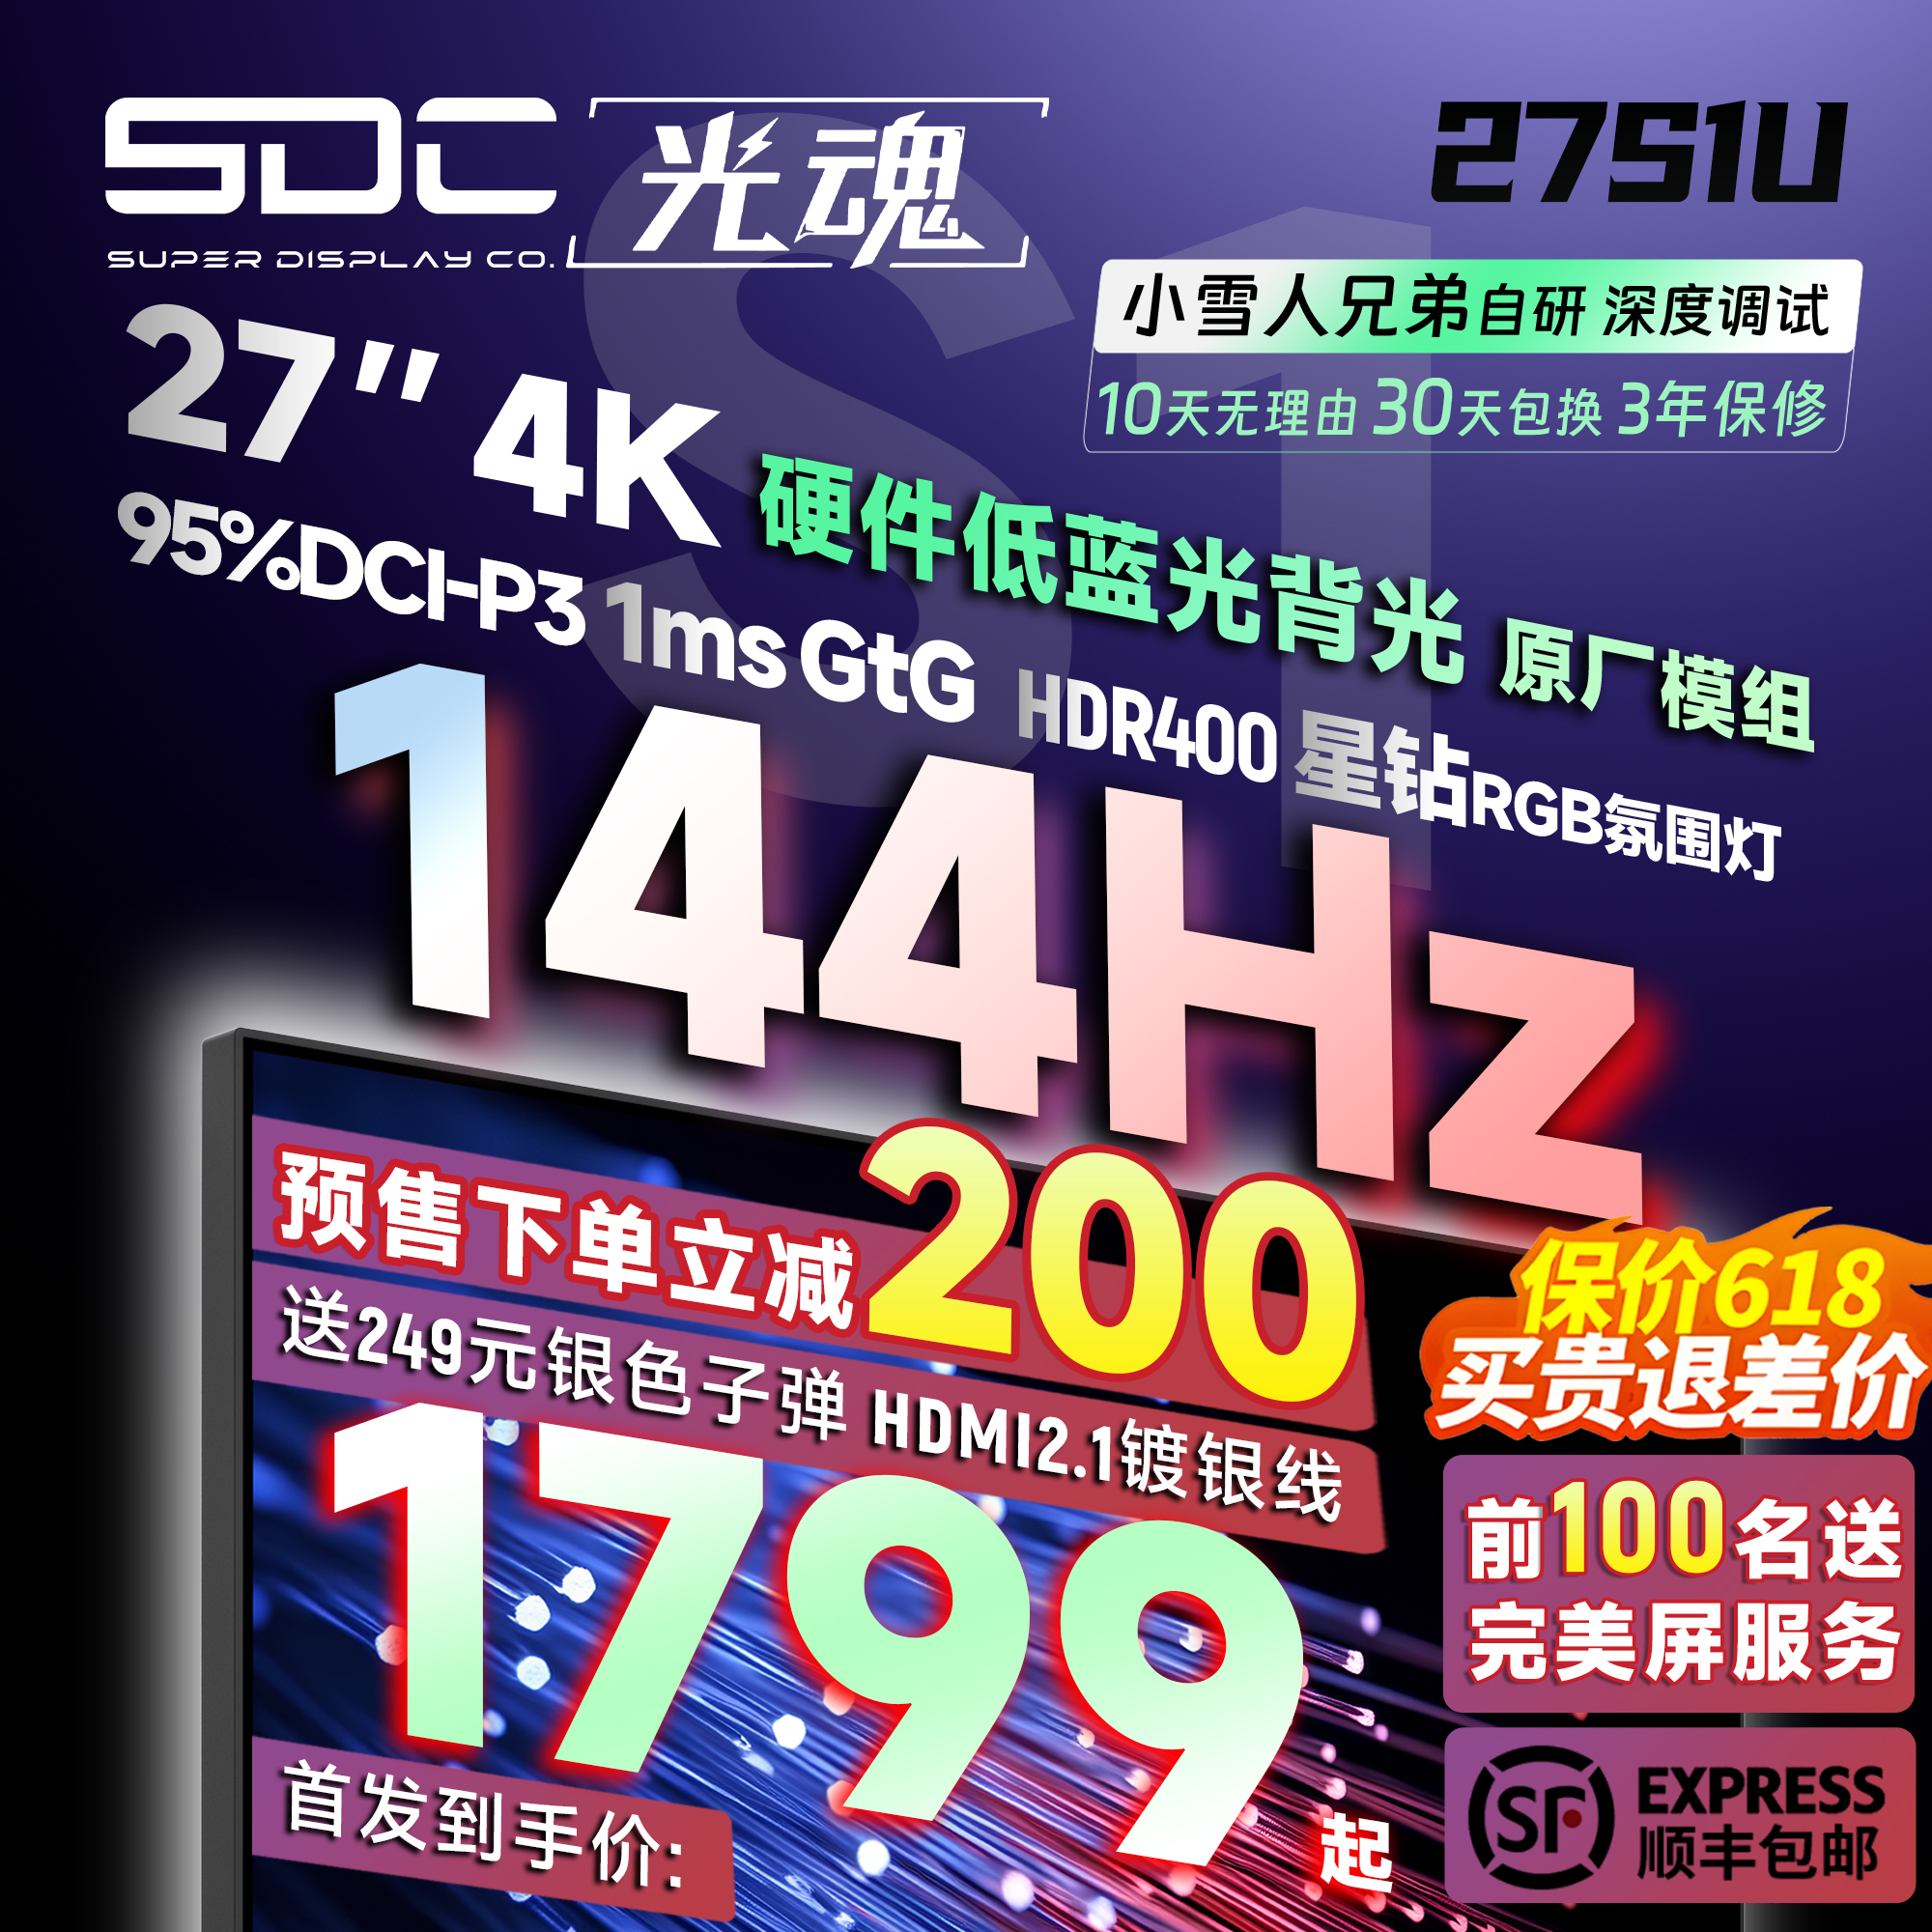 光魂/SDC 27S1U 27英寸显示器4K Fast IPS屏游戏电脑144Hz屏幕